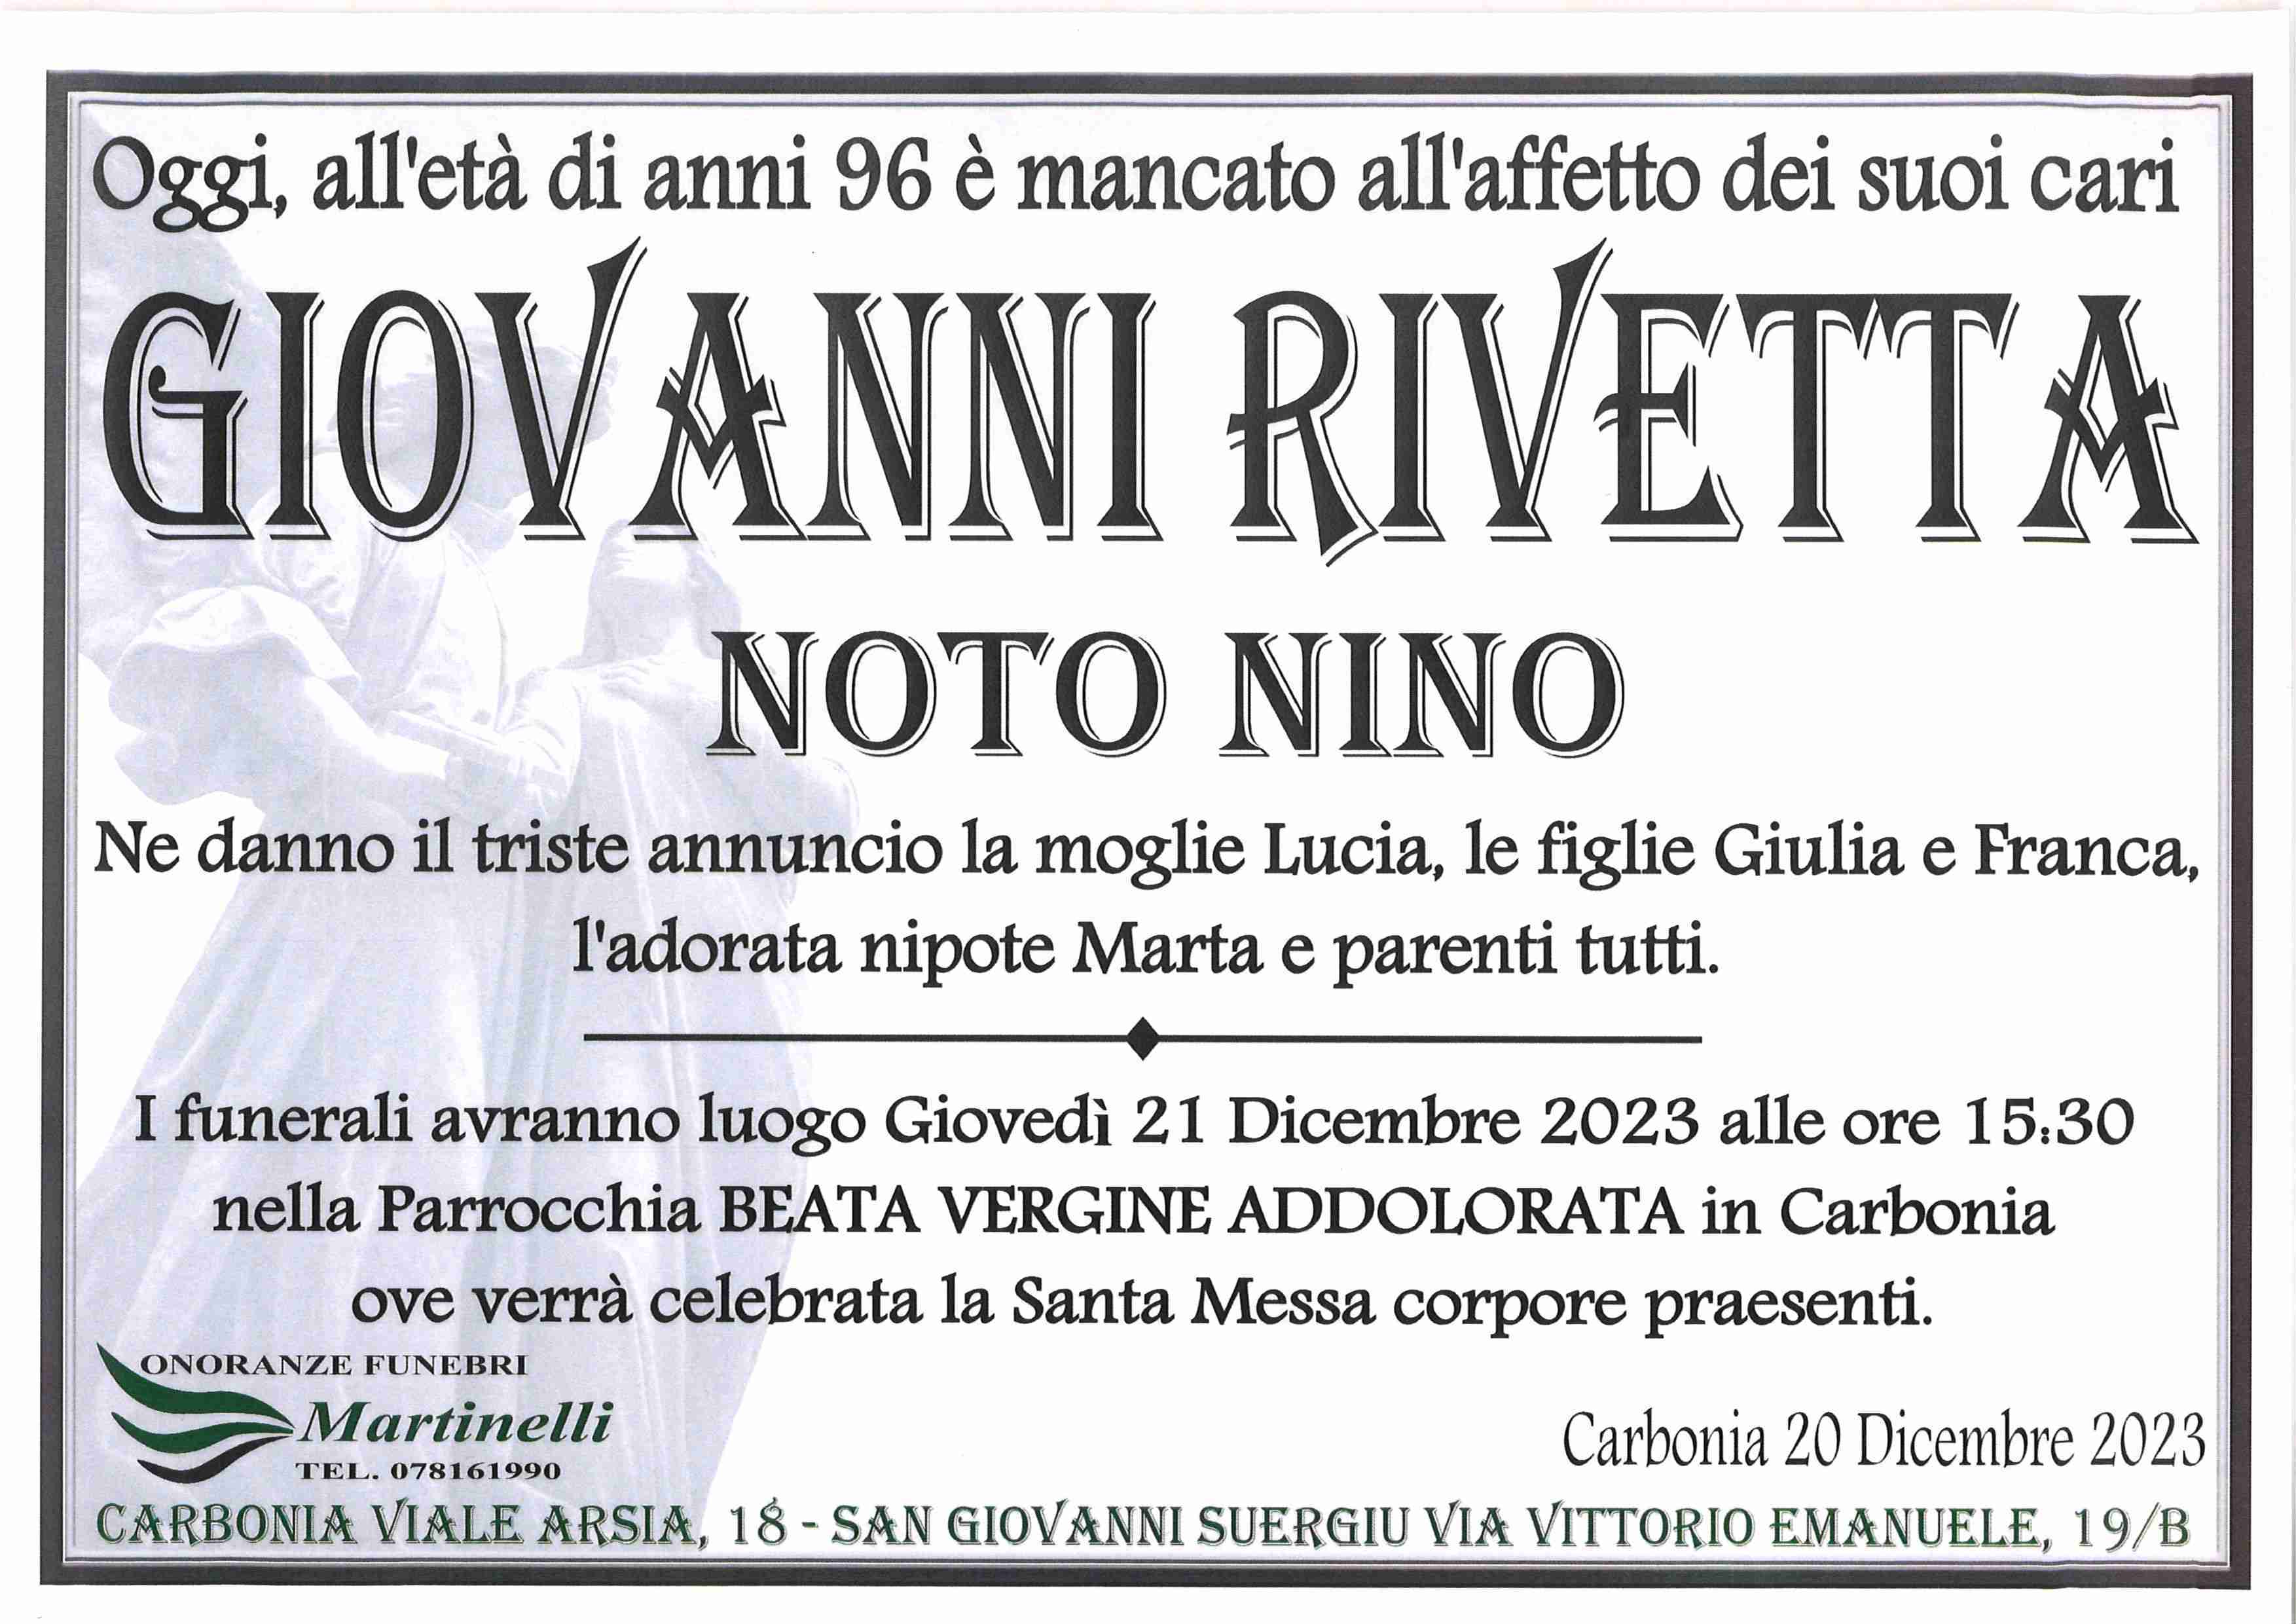 Giovanni Rivetta